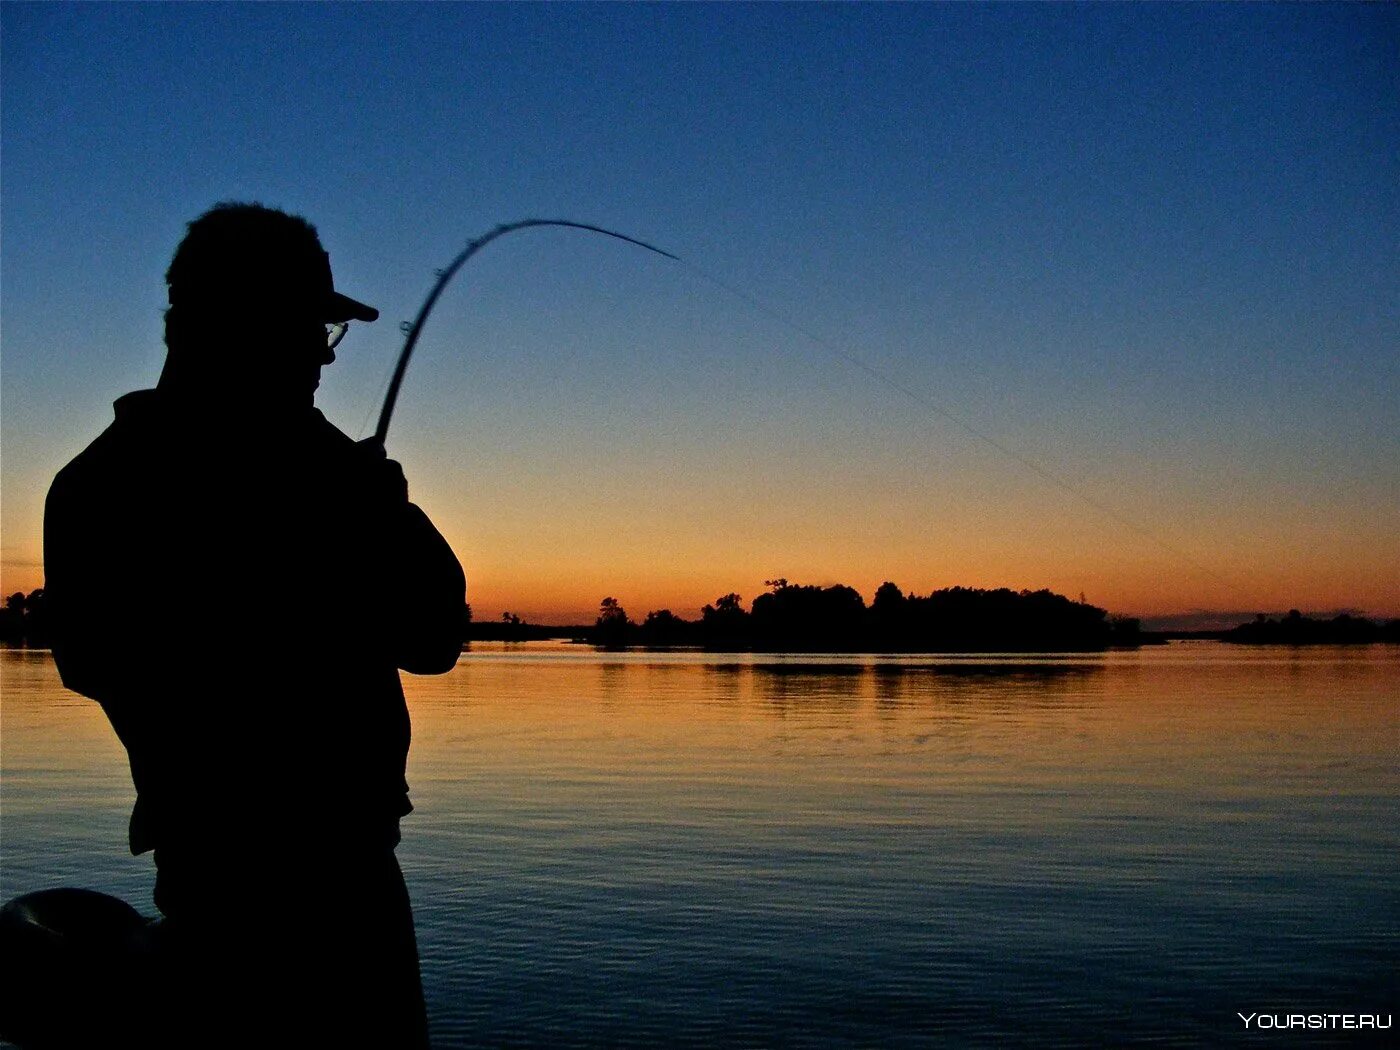 Рыбу удят удочкой. Рыбалка. Рыбак со спиннингом. Рыбак с удочкой. Ночная рыбалка.